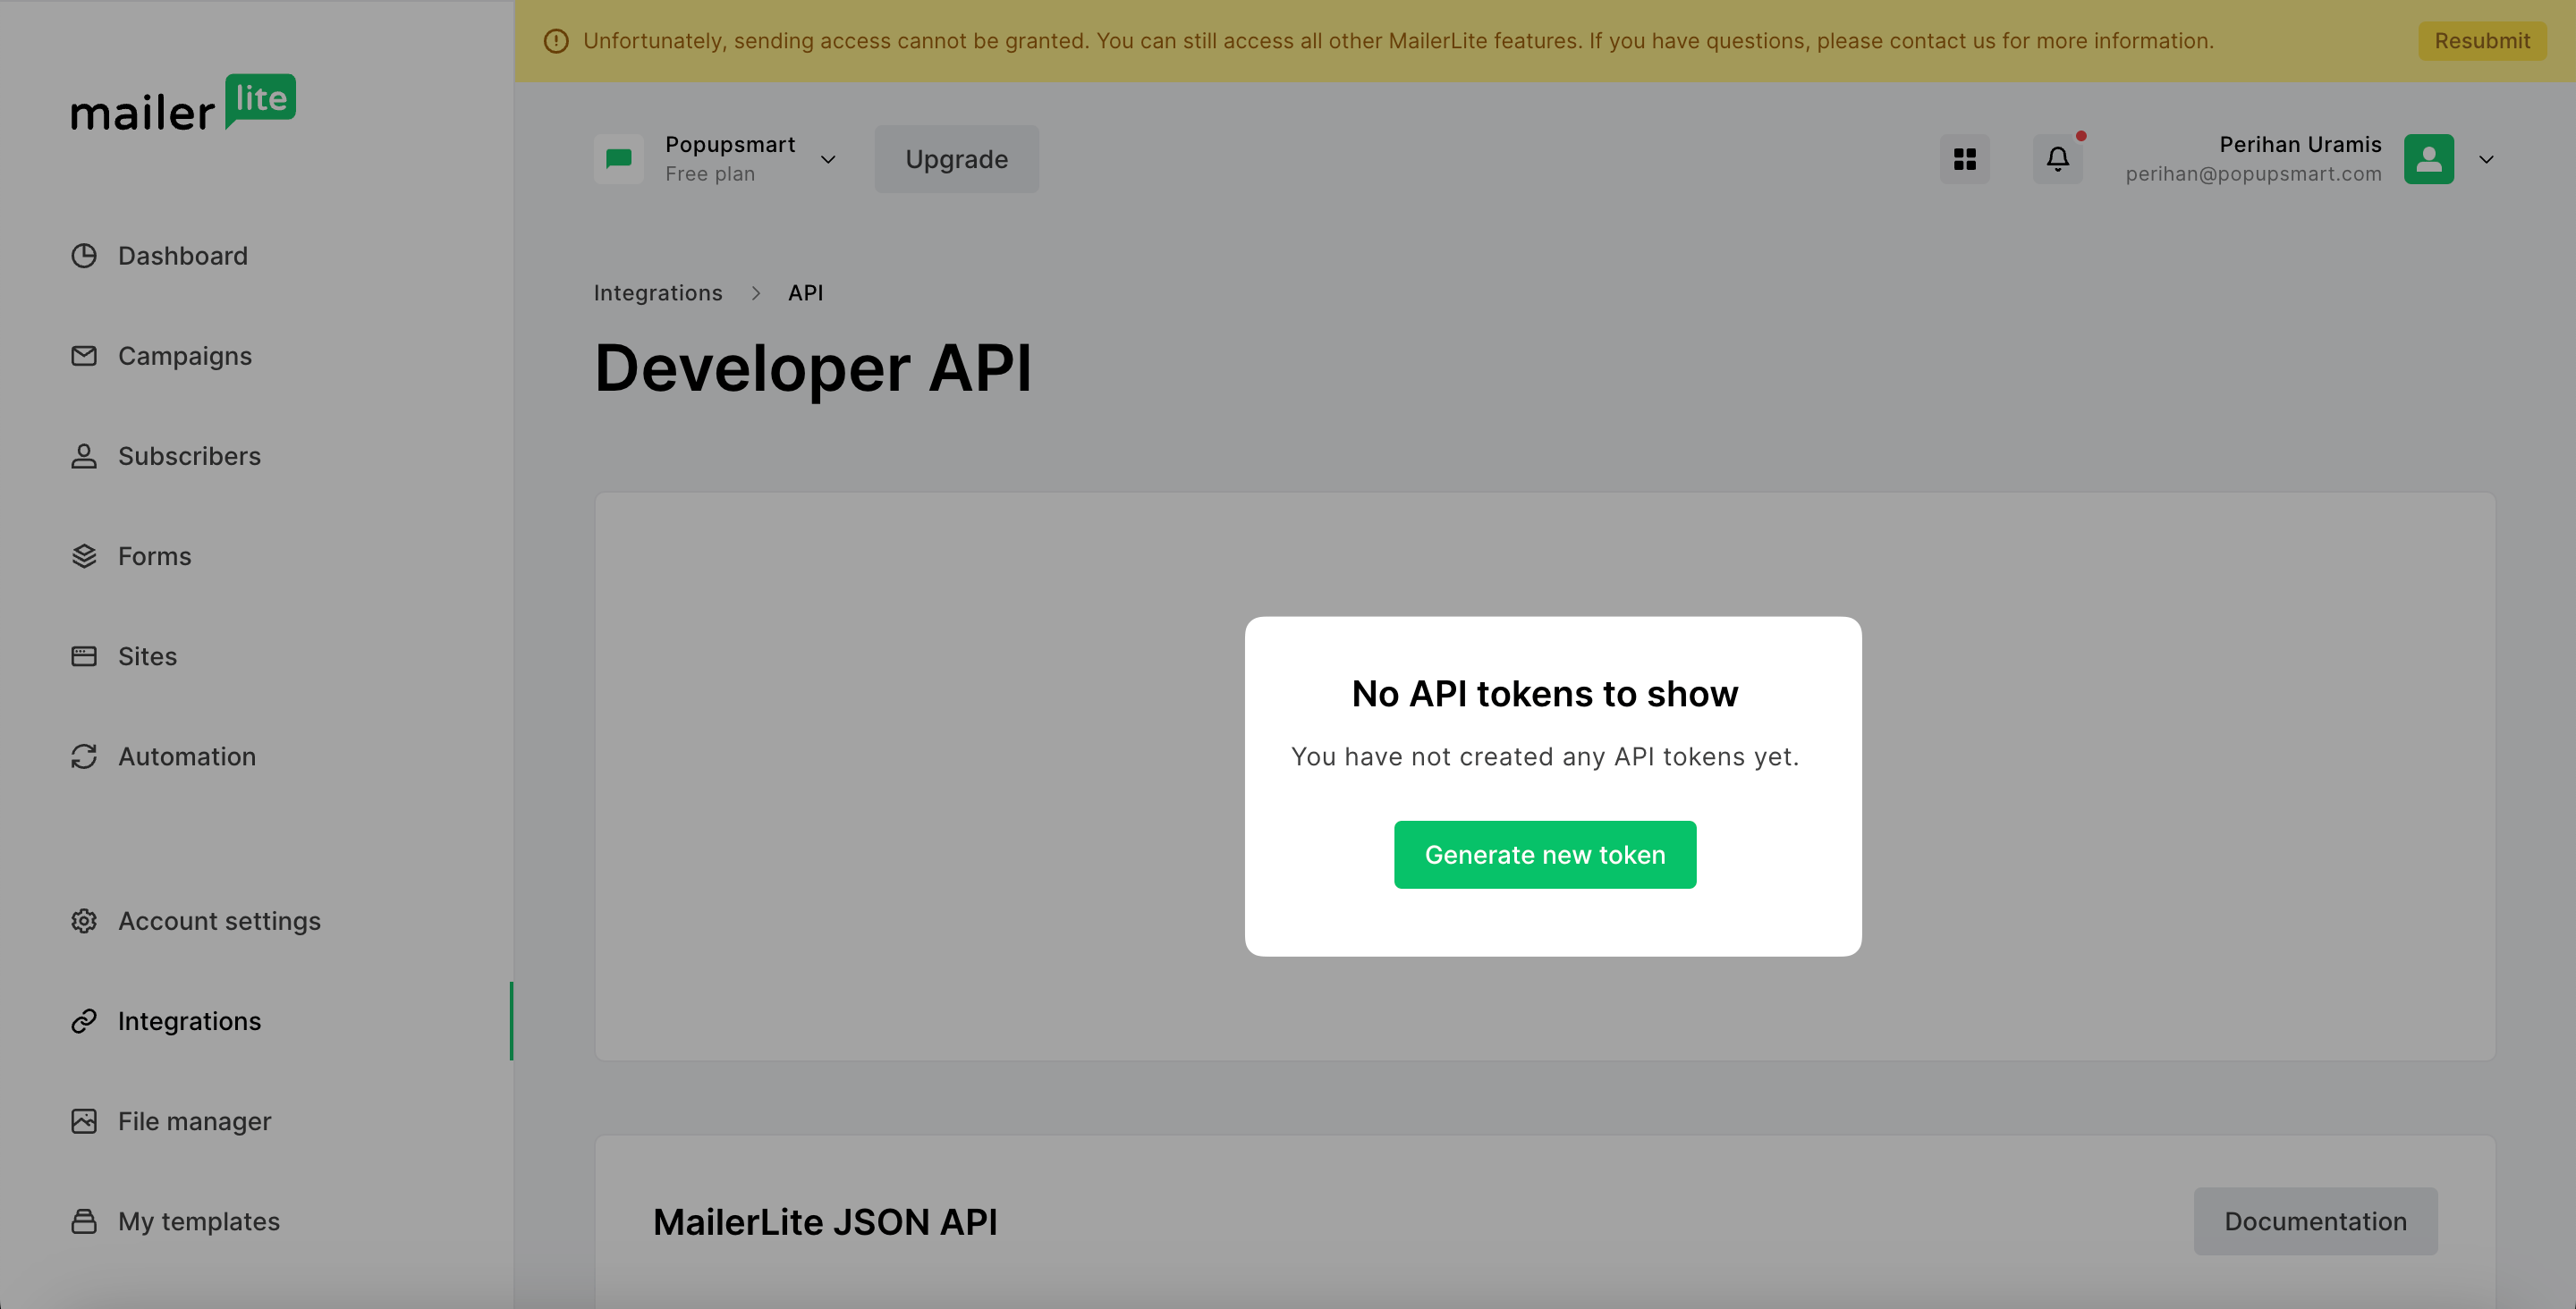 Popupsmart - Generate New Token MailerLite